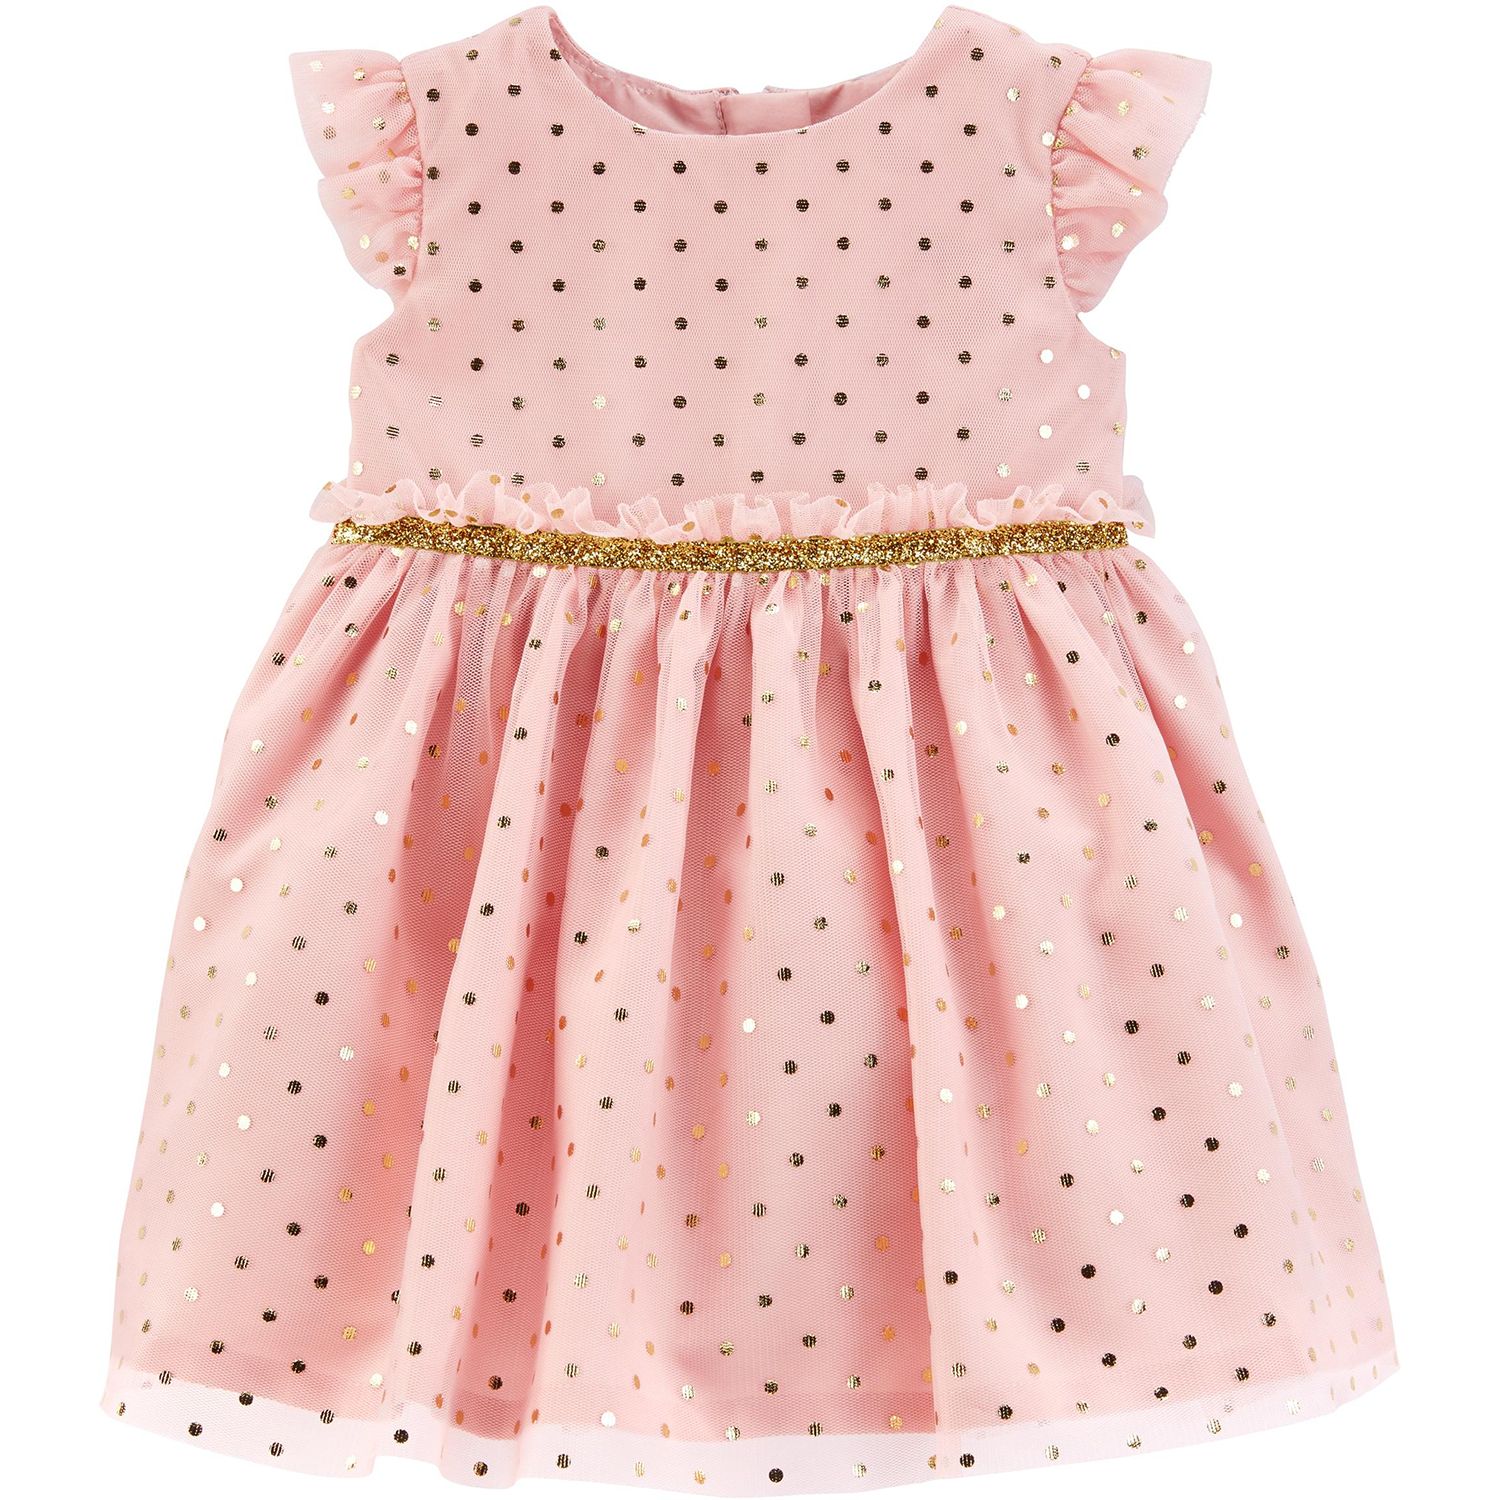 little girl polka dot dress